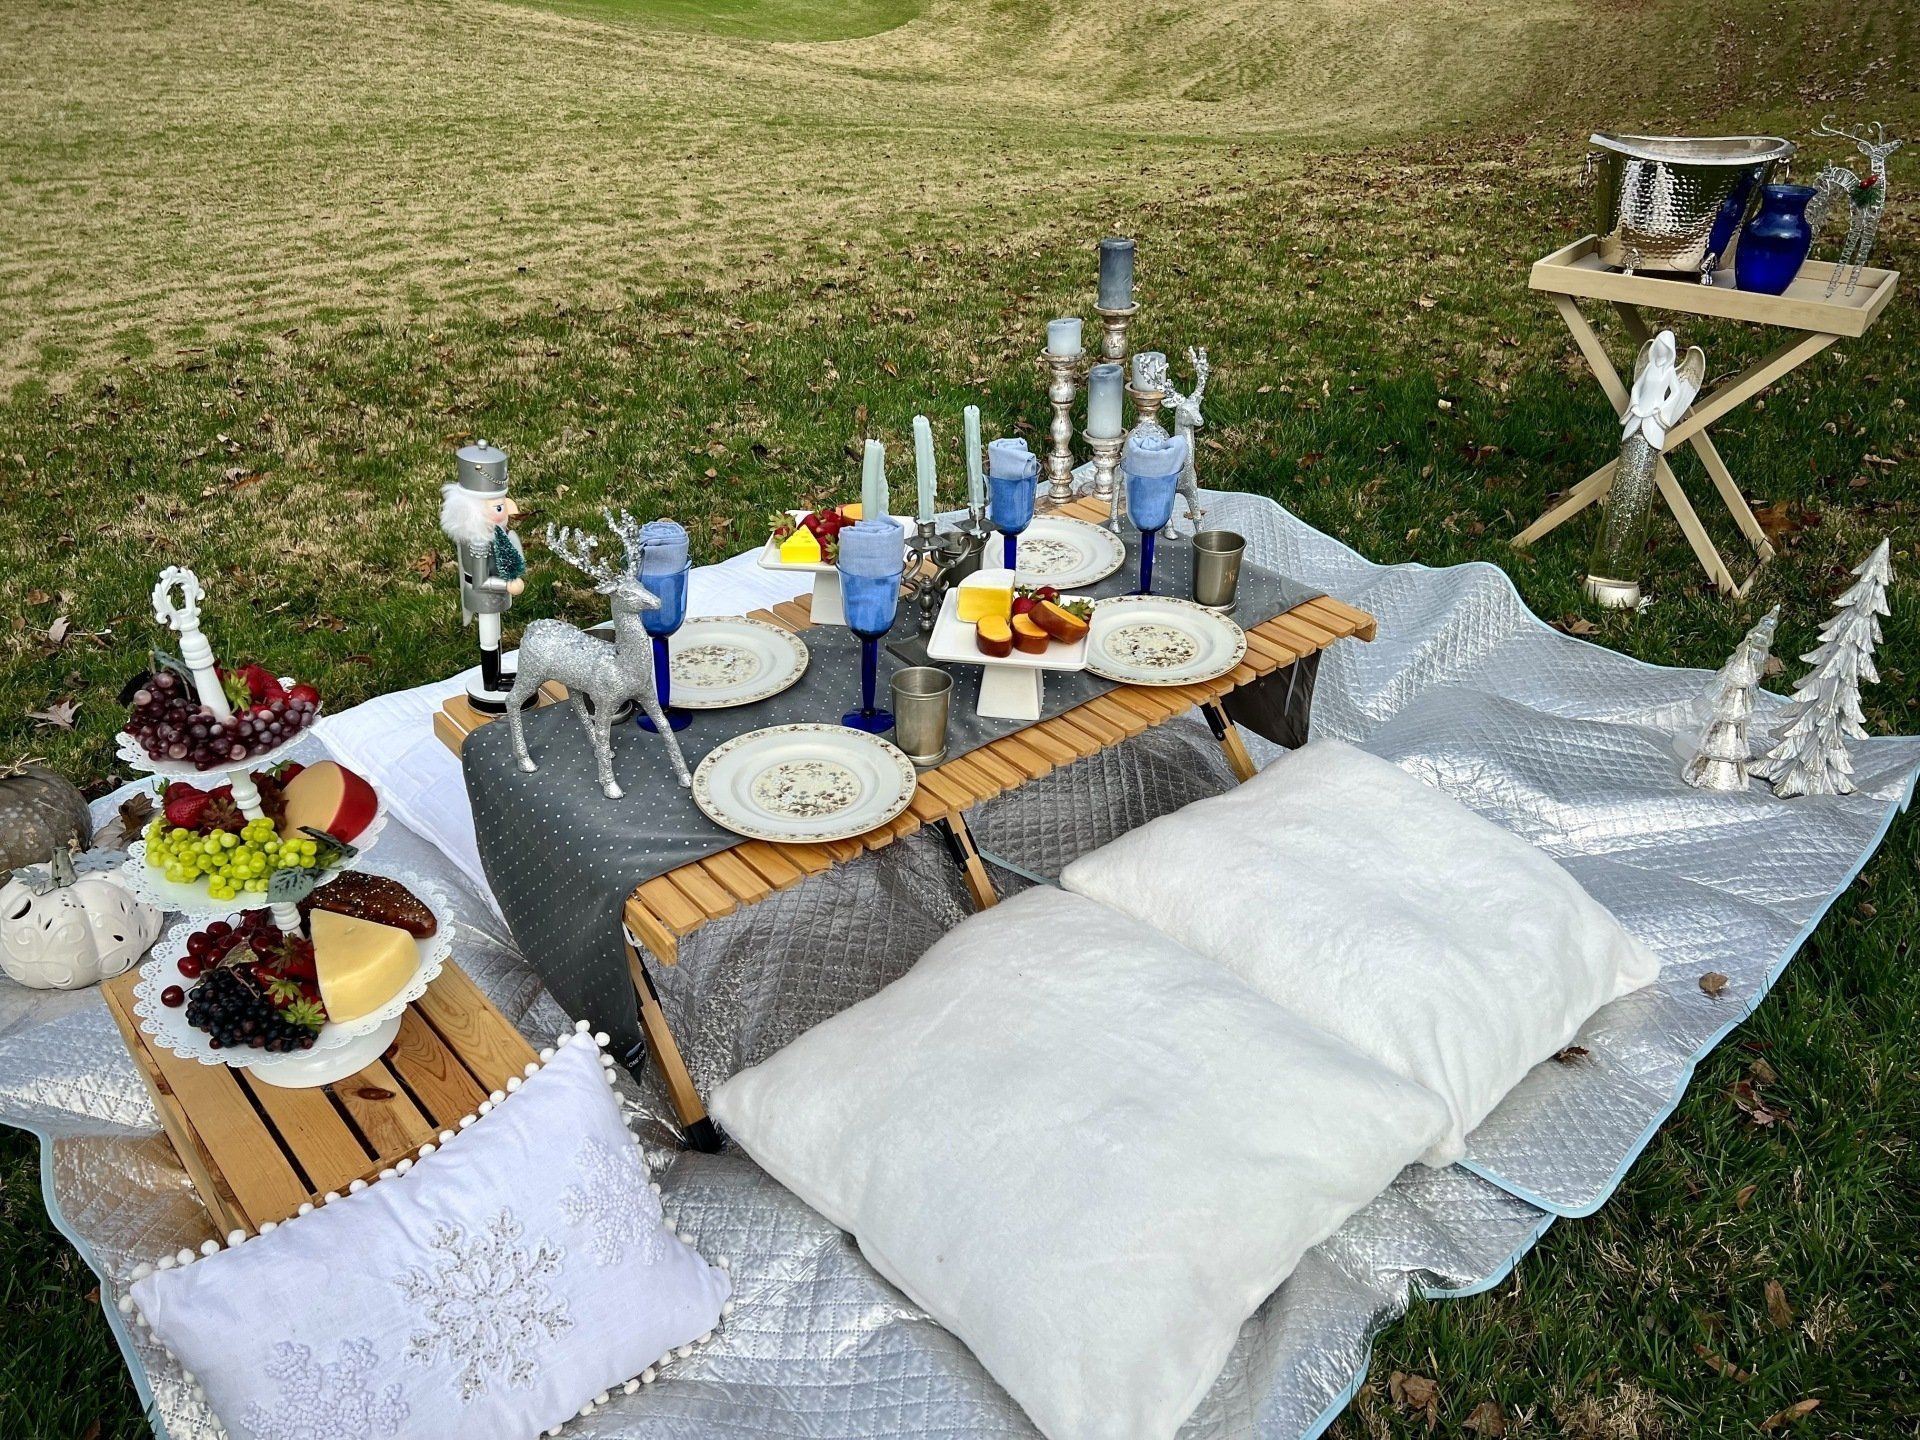 picnic setup for holiday